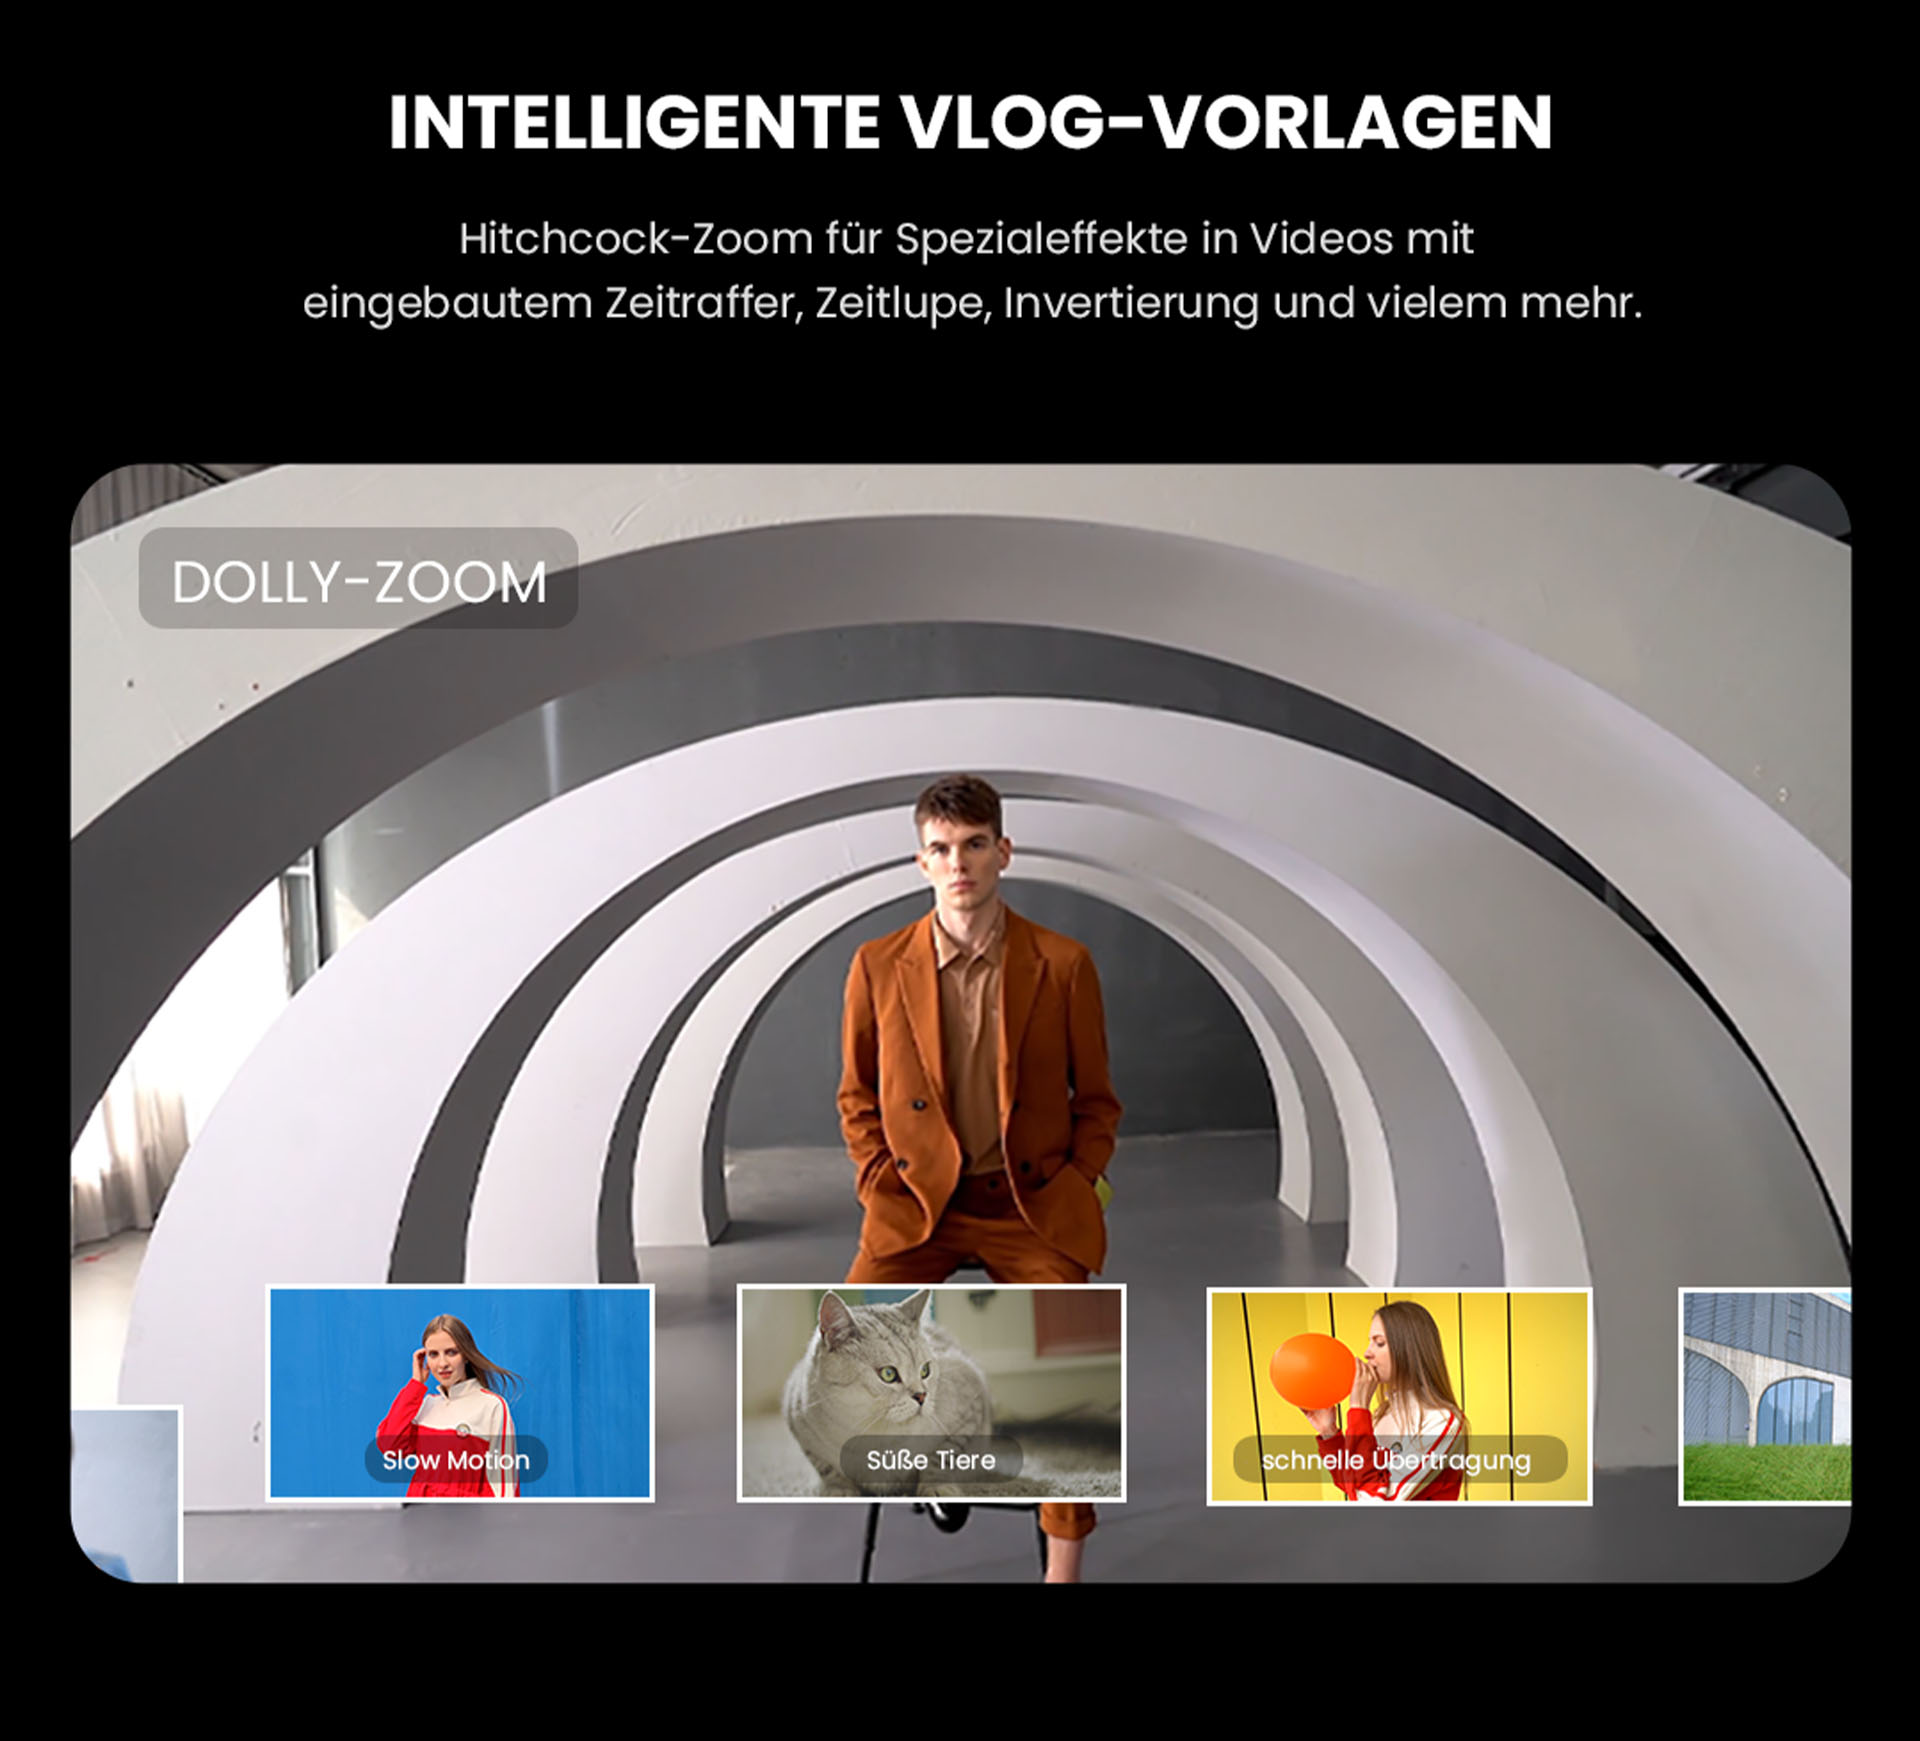 Intelligente VLOG-Vorlagen im ZTE Axon 30 - Hitchcock-Zoom für Spezialeffekte in Videos mit eingebautem Zeitraffer, Zeitlupe, Invertierung und vielem mehr